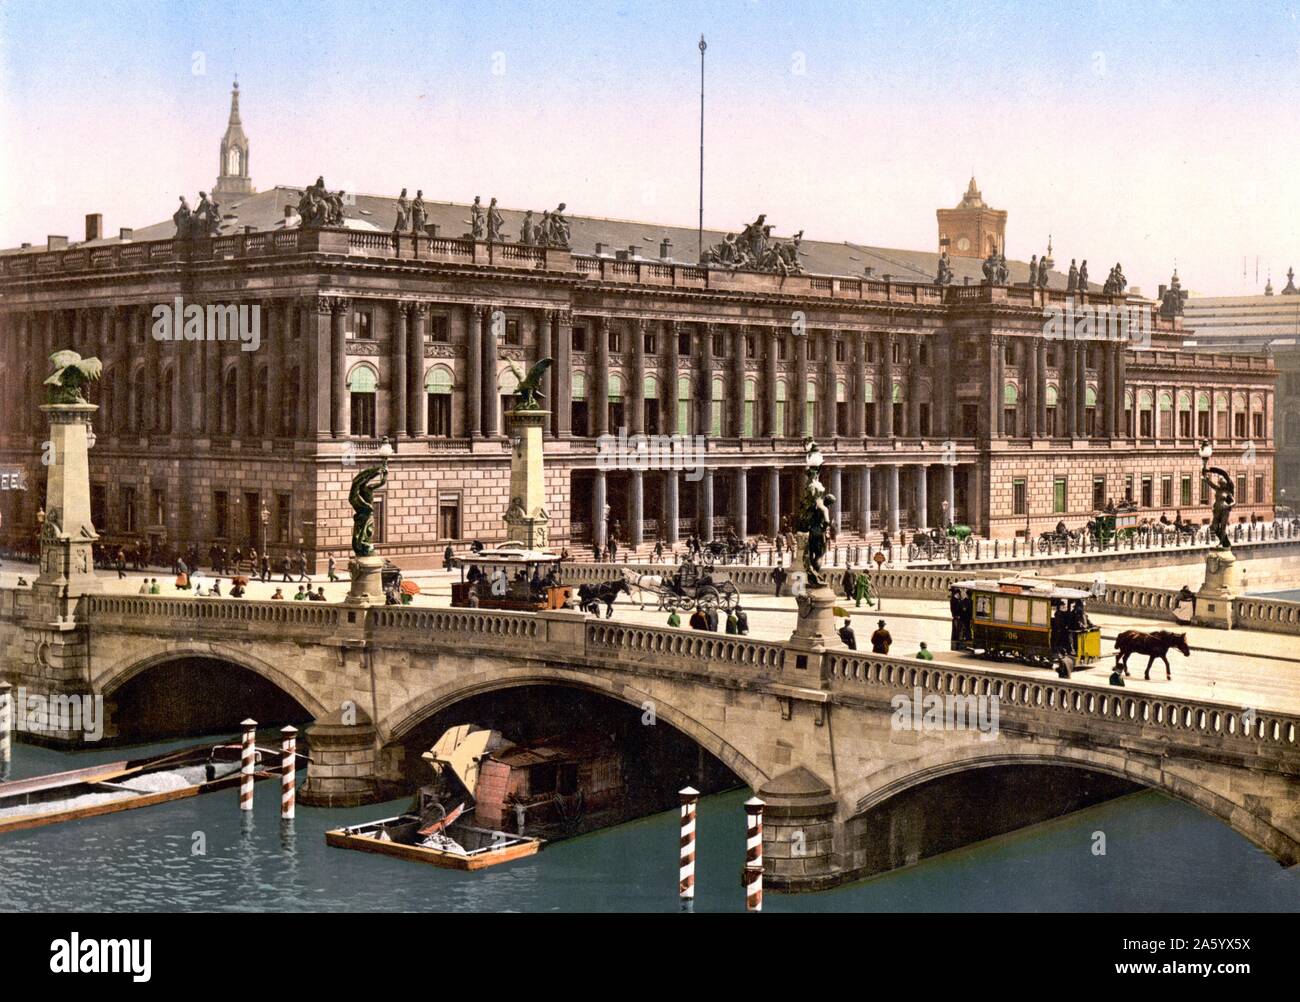 Pferdekutsche Straßenbahnen Brücke der Friedrich neben der Börse oder Bourse, Berlin, Deutschland 1900 Stockfoto